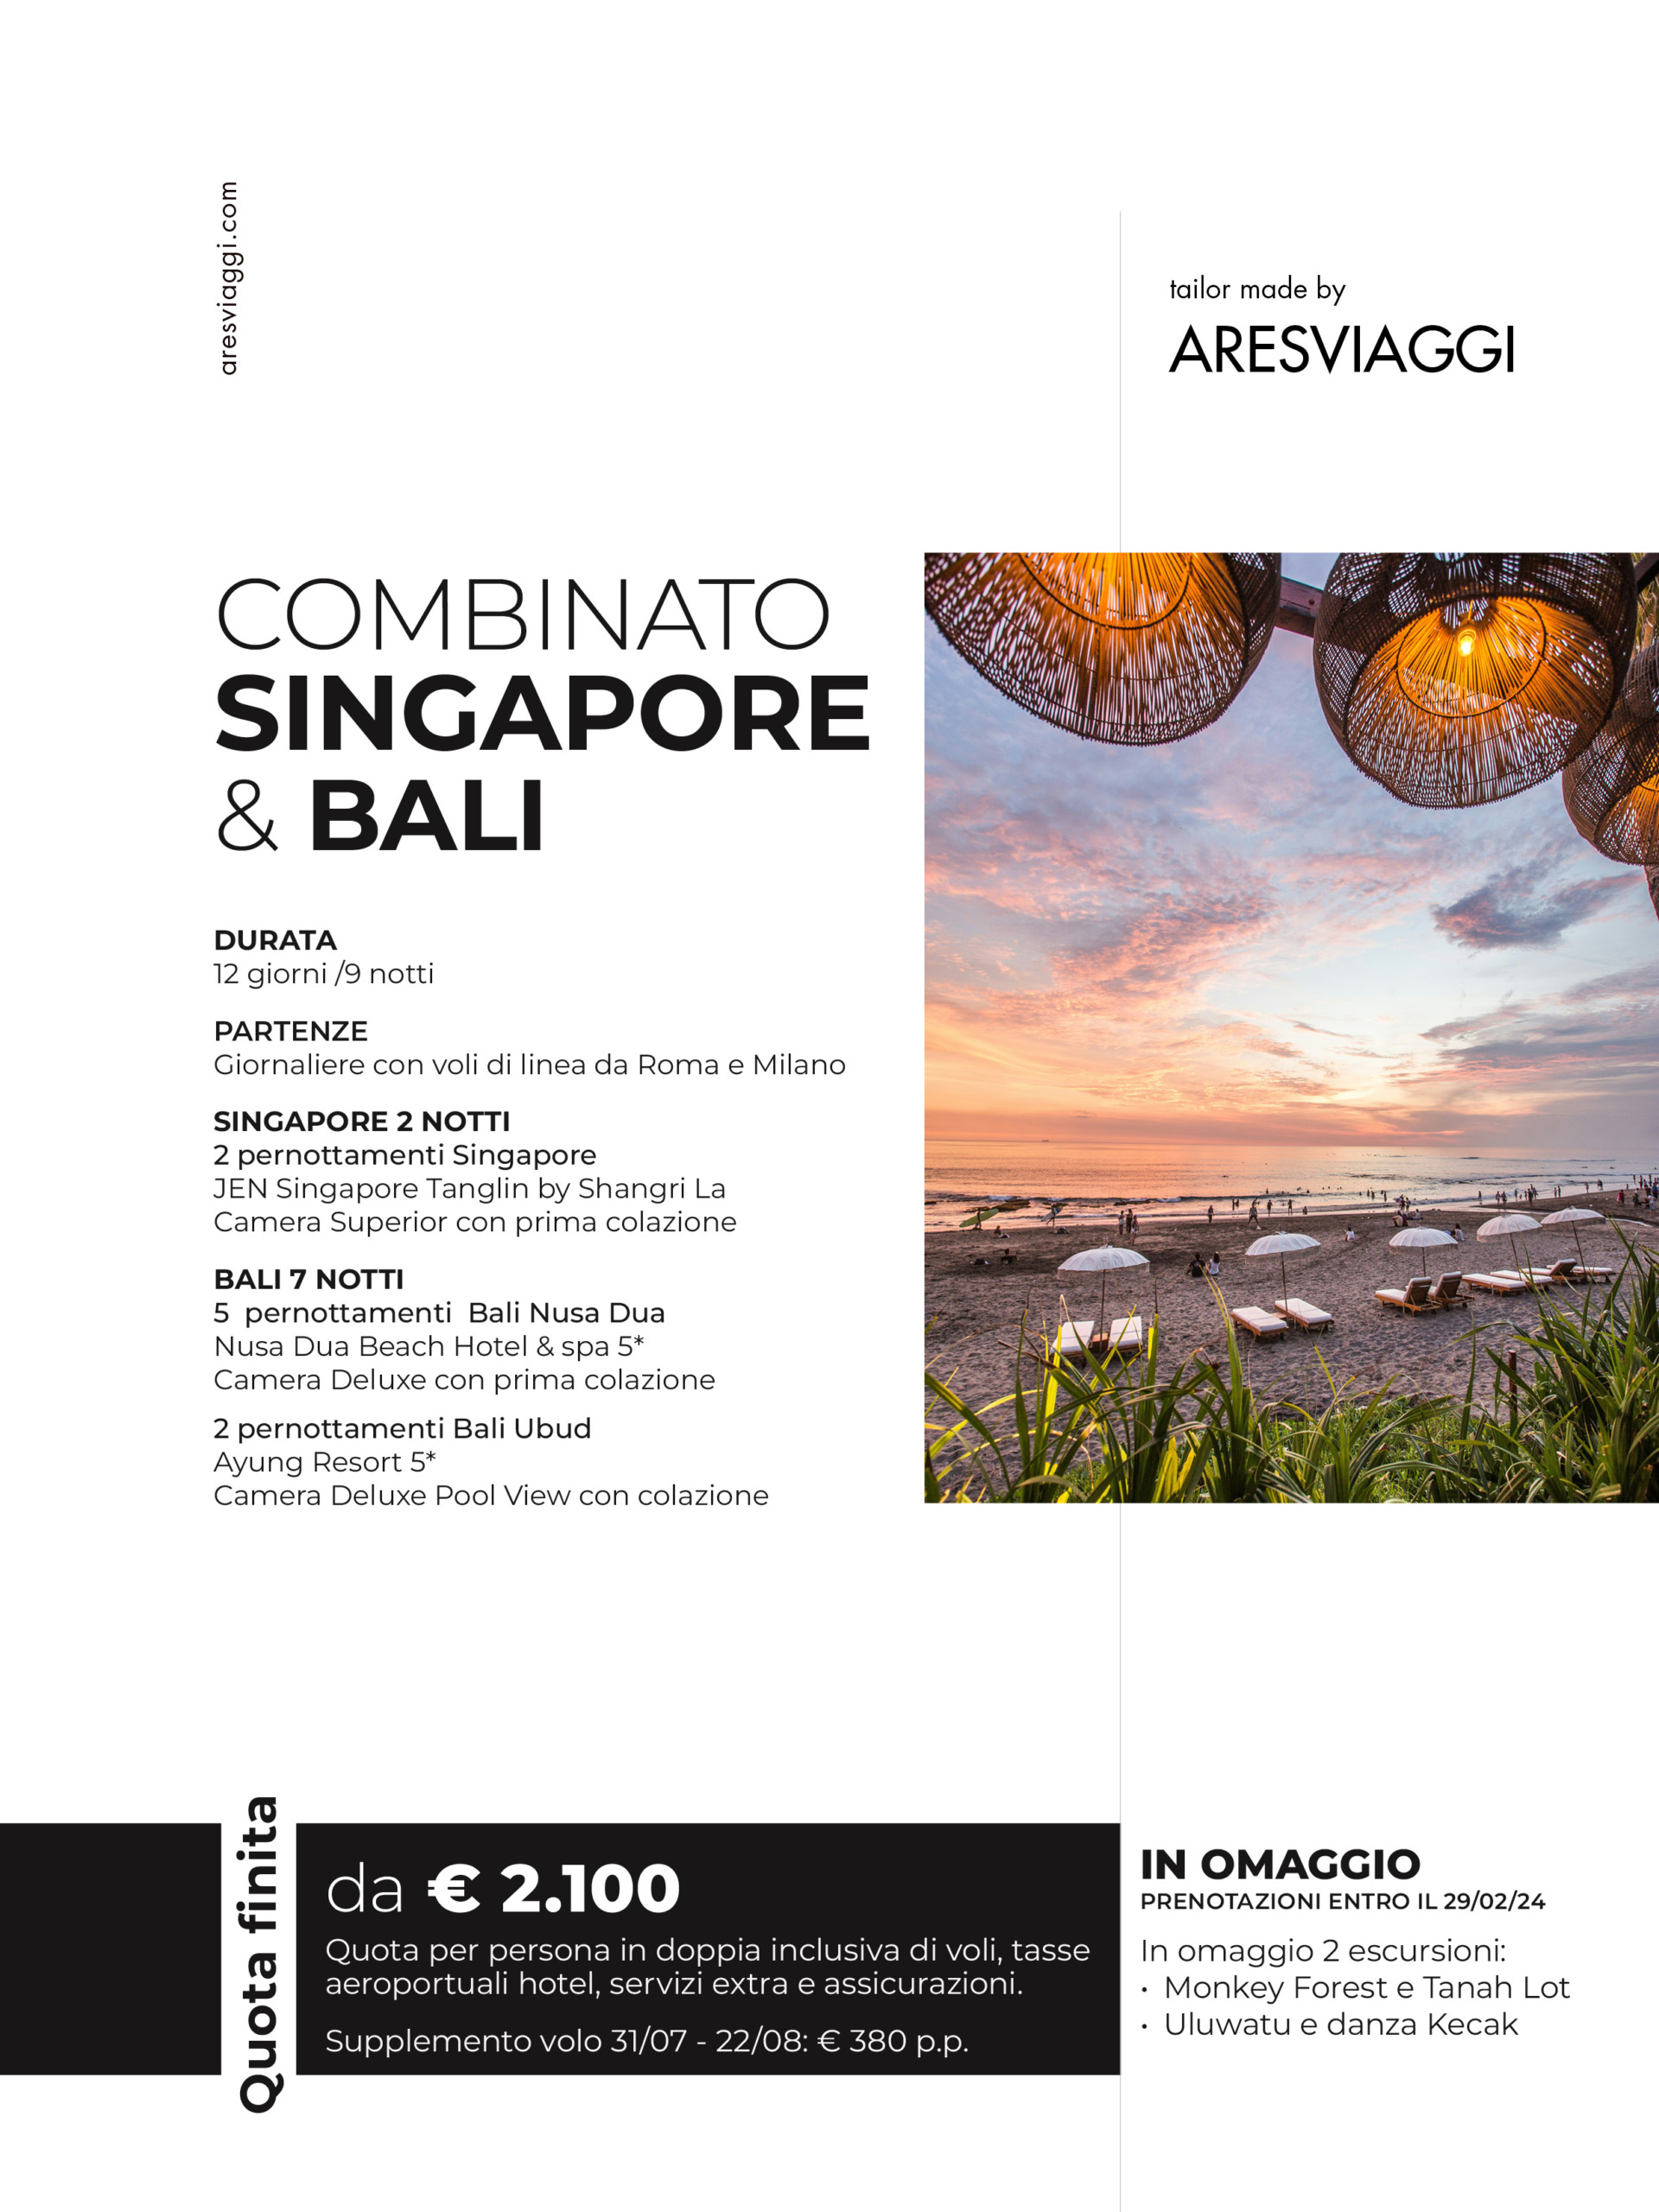 Bali e Singapore